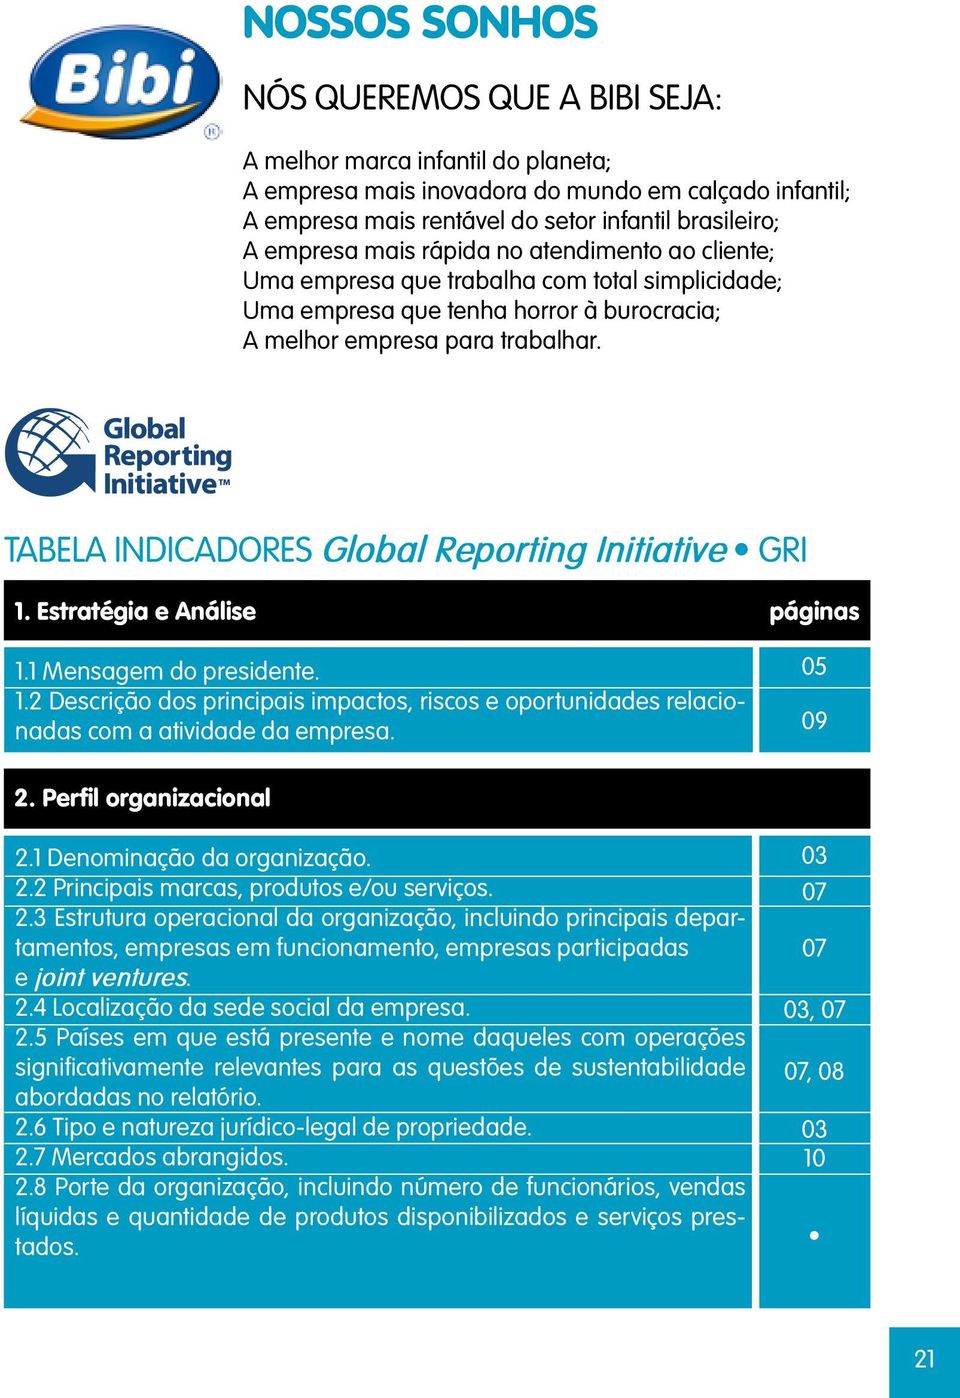 TABELA IICADORES Global Reporting Initiative GRI 1. Estratégia e Análise 1.1 Mensagem do presidente. 1.2 Descrição dos principais impactos, riscos e oportunidades relacionadas com a atividade da empresa.